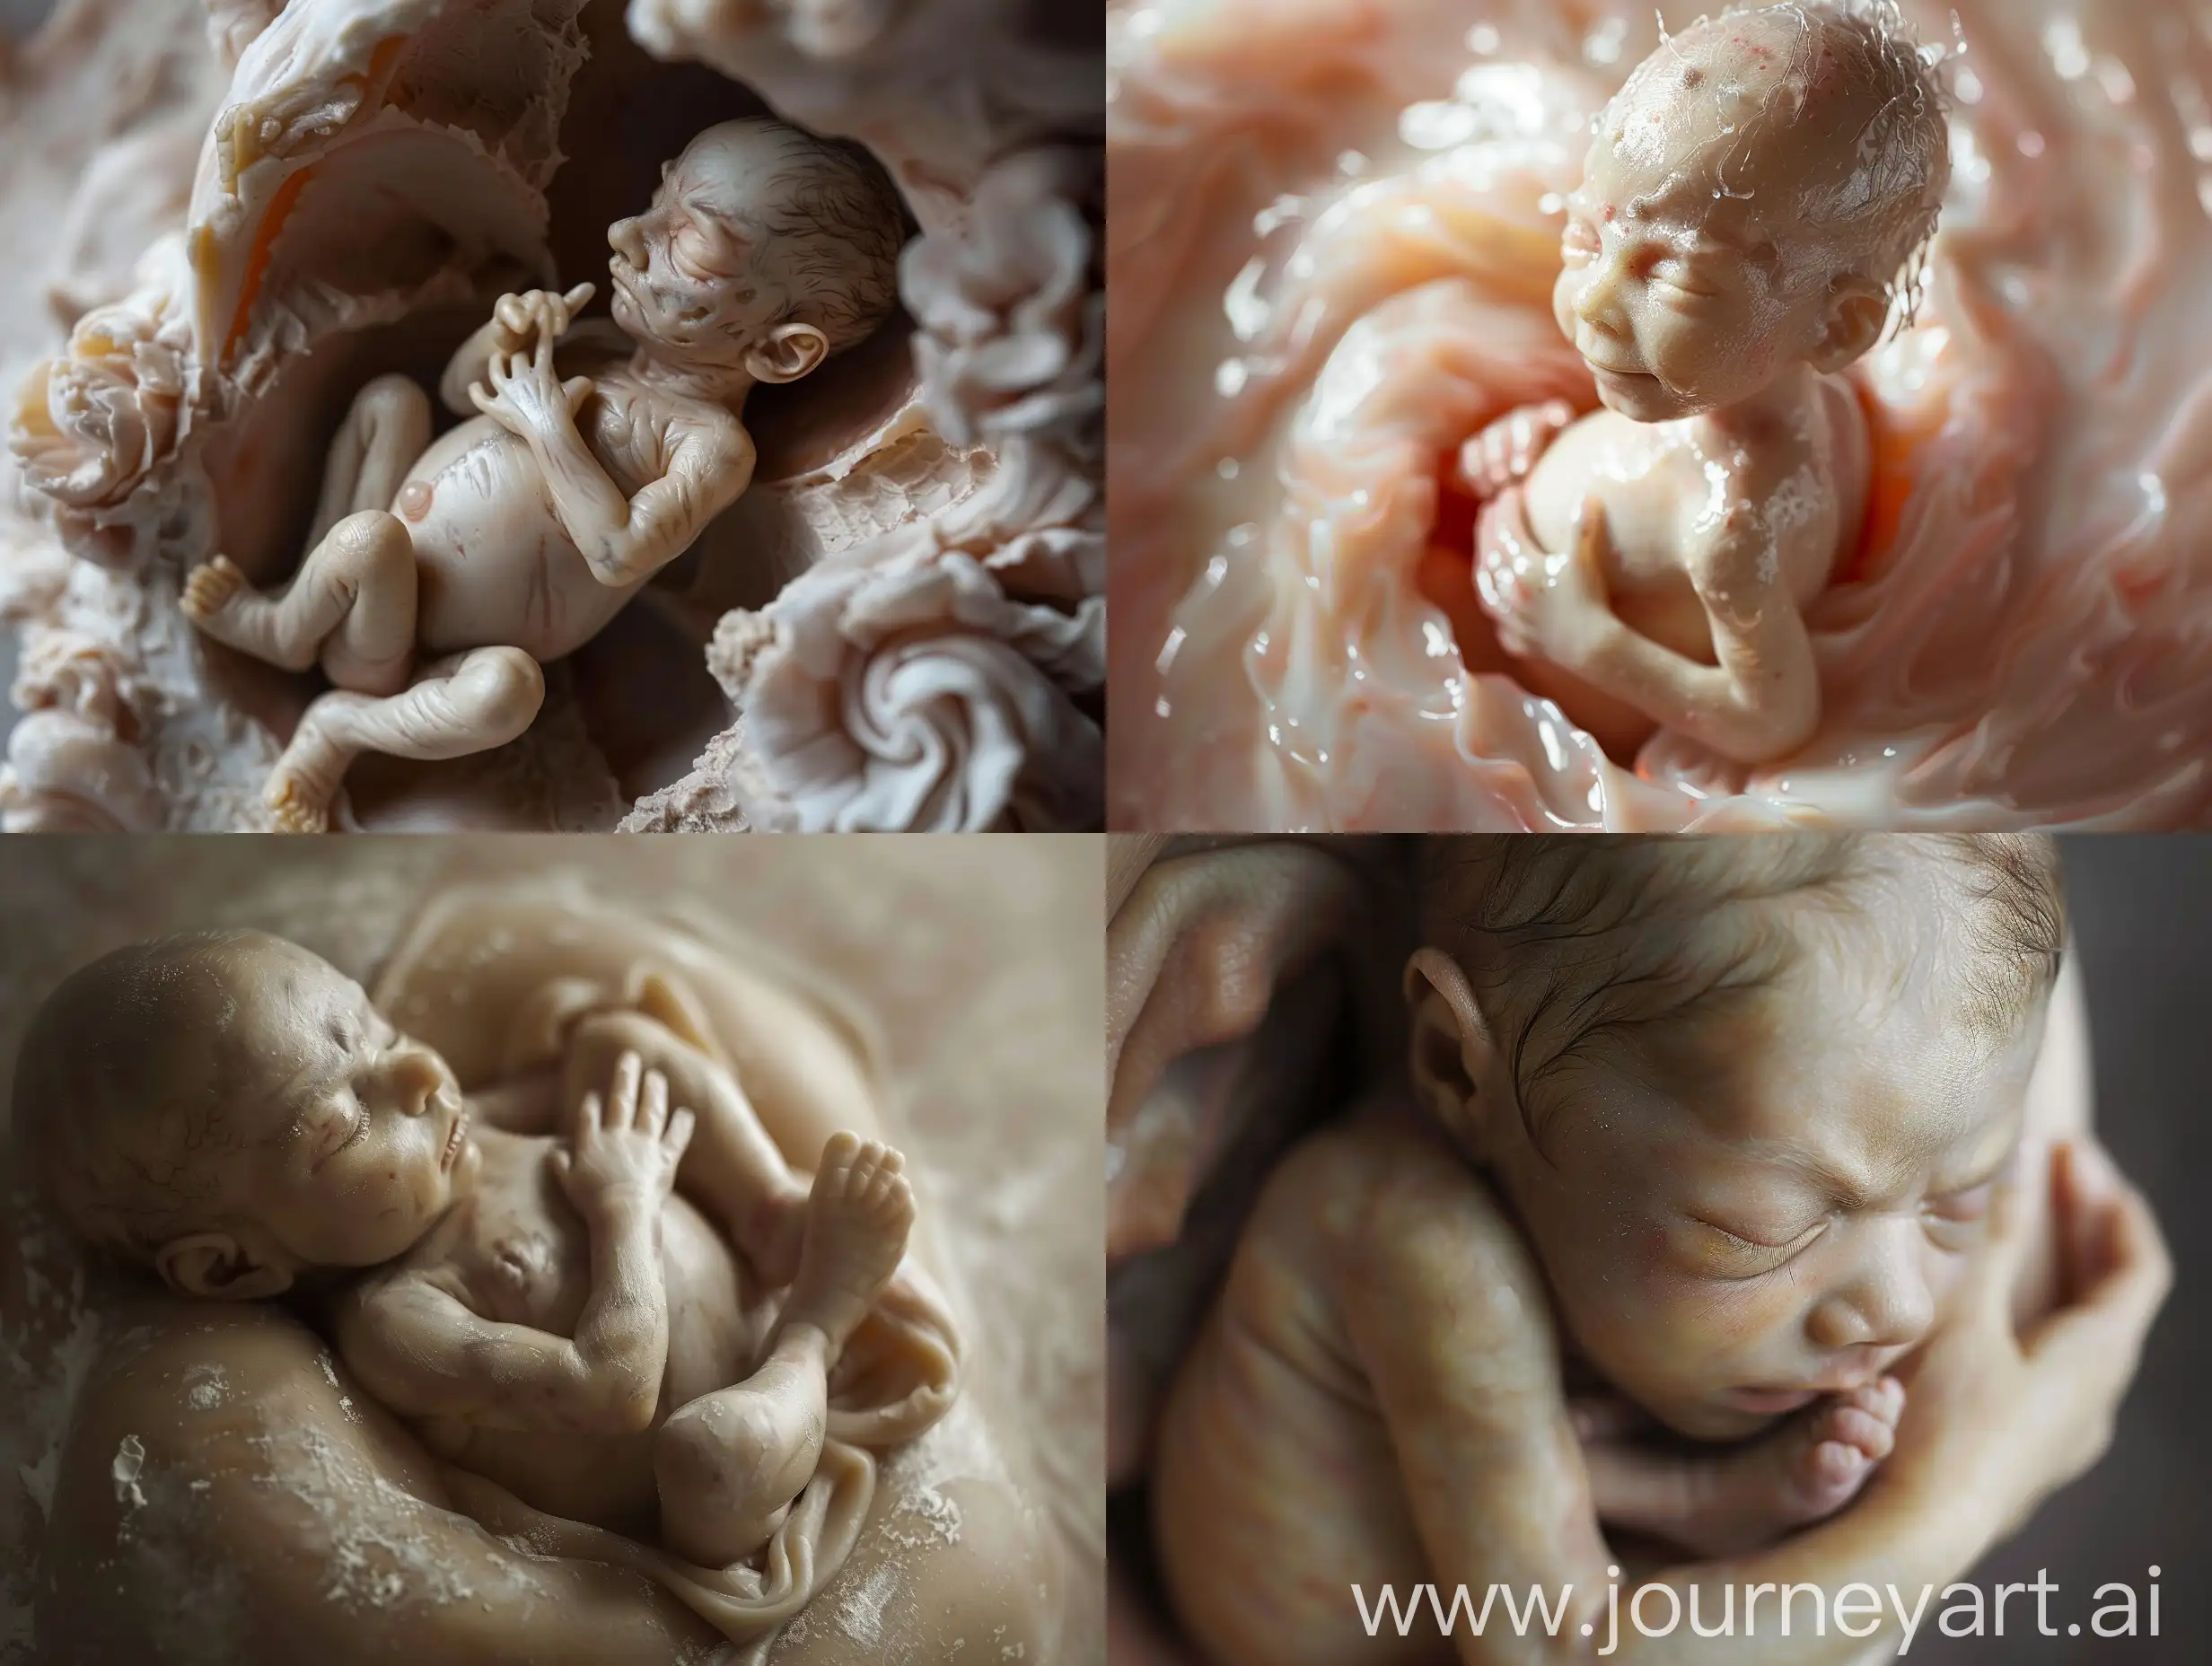 Реалистичная фотография плода в утробе матери до рождения, детали